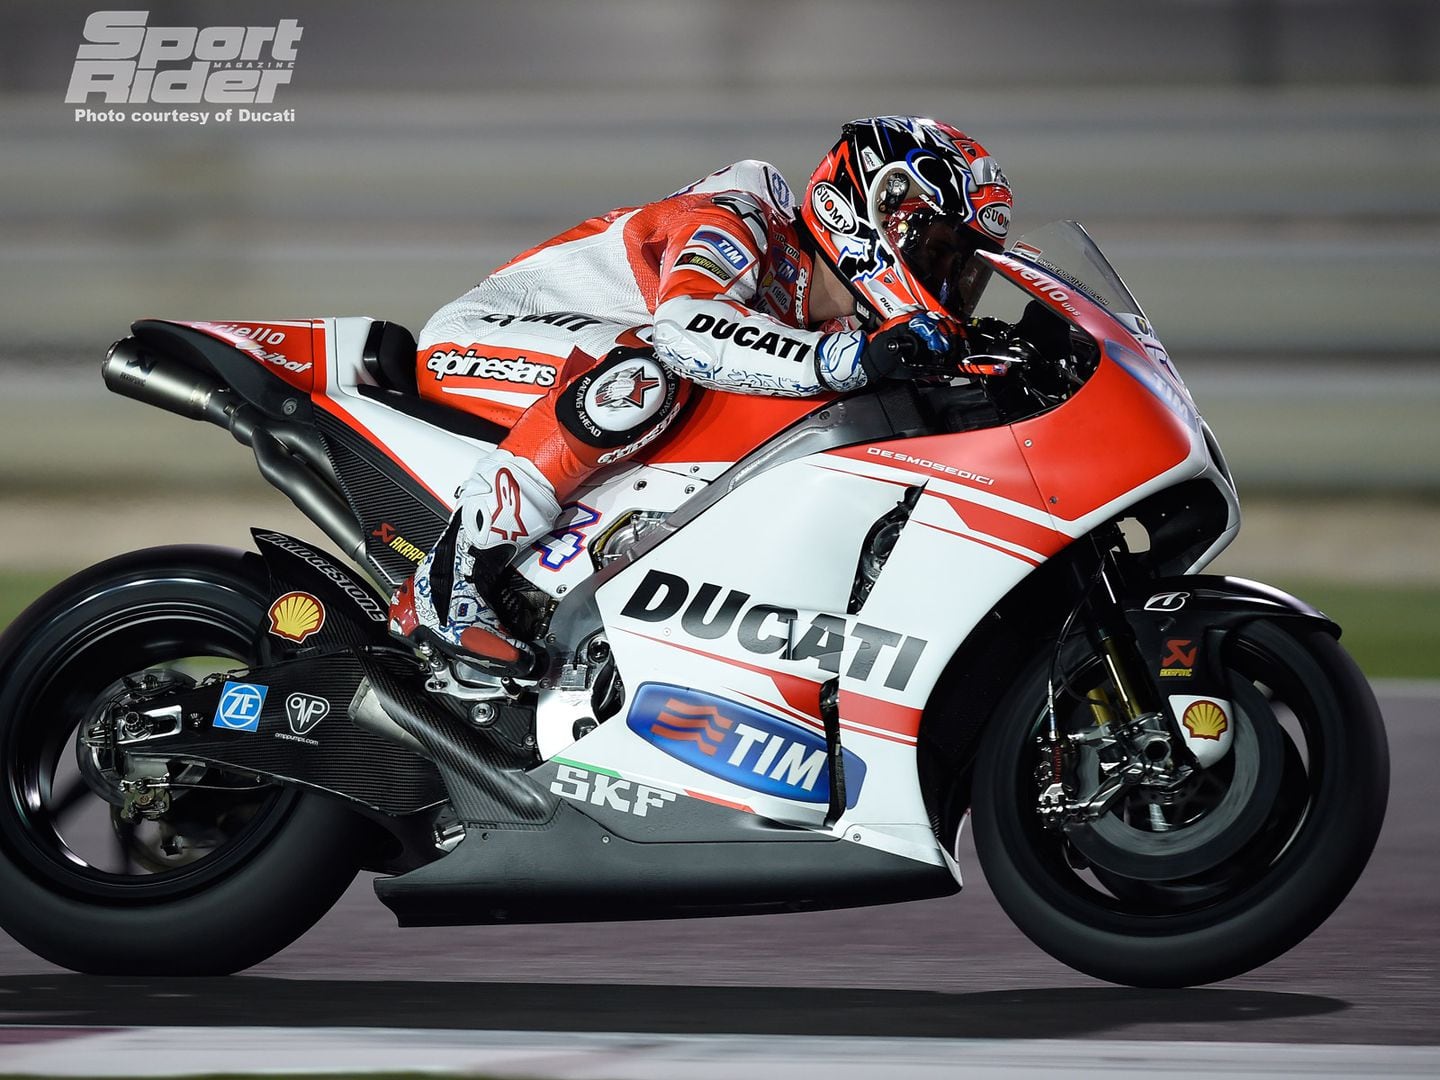 Photos: 2015 MotoGP Preview - Andrea Dovizioso | Cycle World